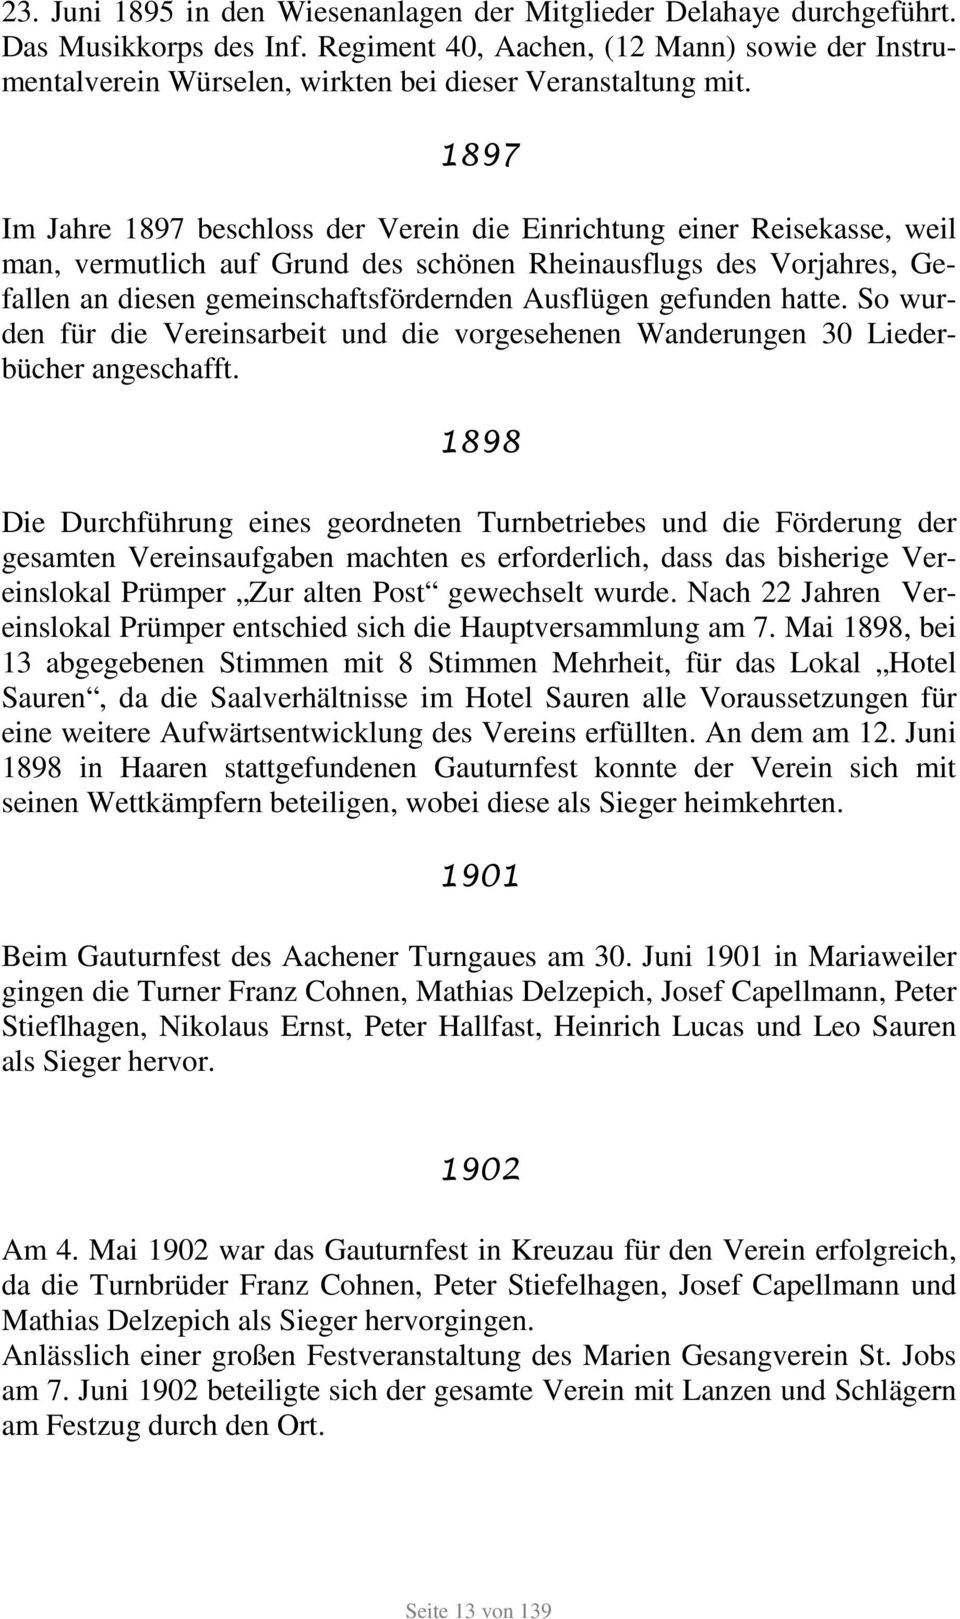 1897 Im Jahre 1897 beschloss der Verein die Einrichtung einer Reisekasse, weil man, vermutlich auf Grund des schönen Rheinausflugs des Vorjahres, Gefallen an diesen gemeinschaftsfördernden Ausflügen